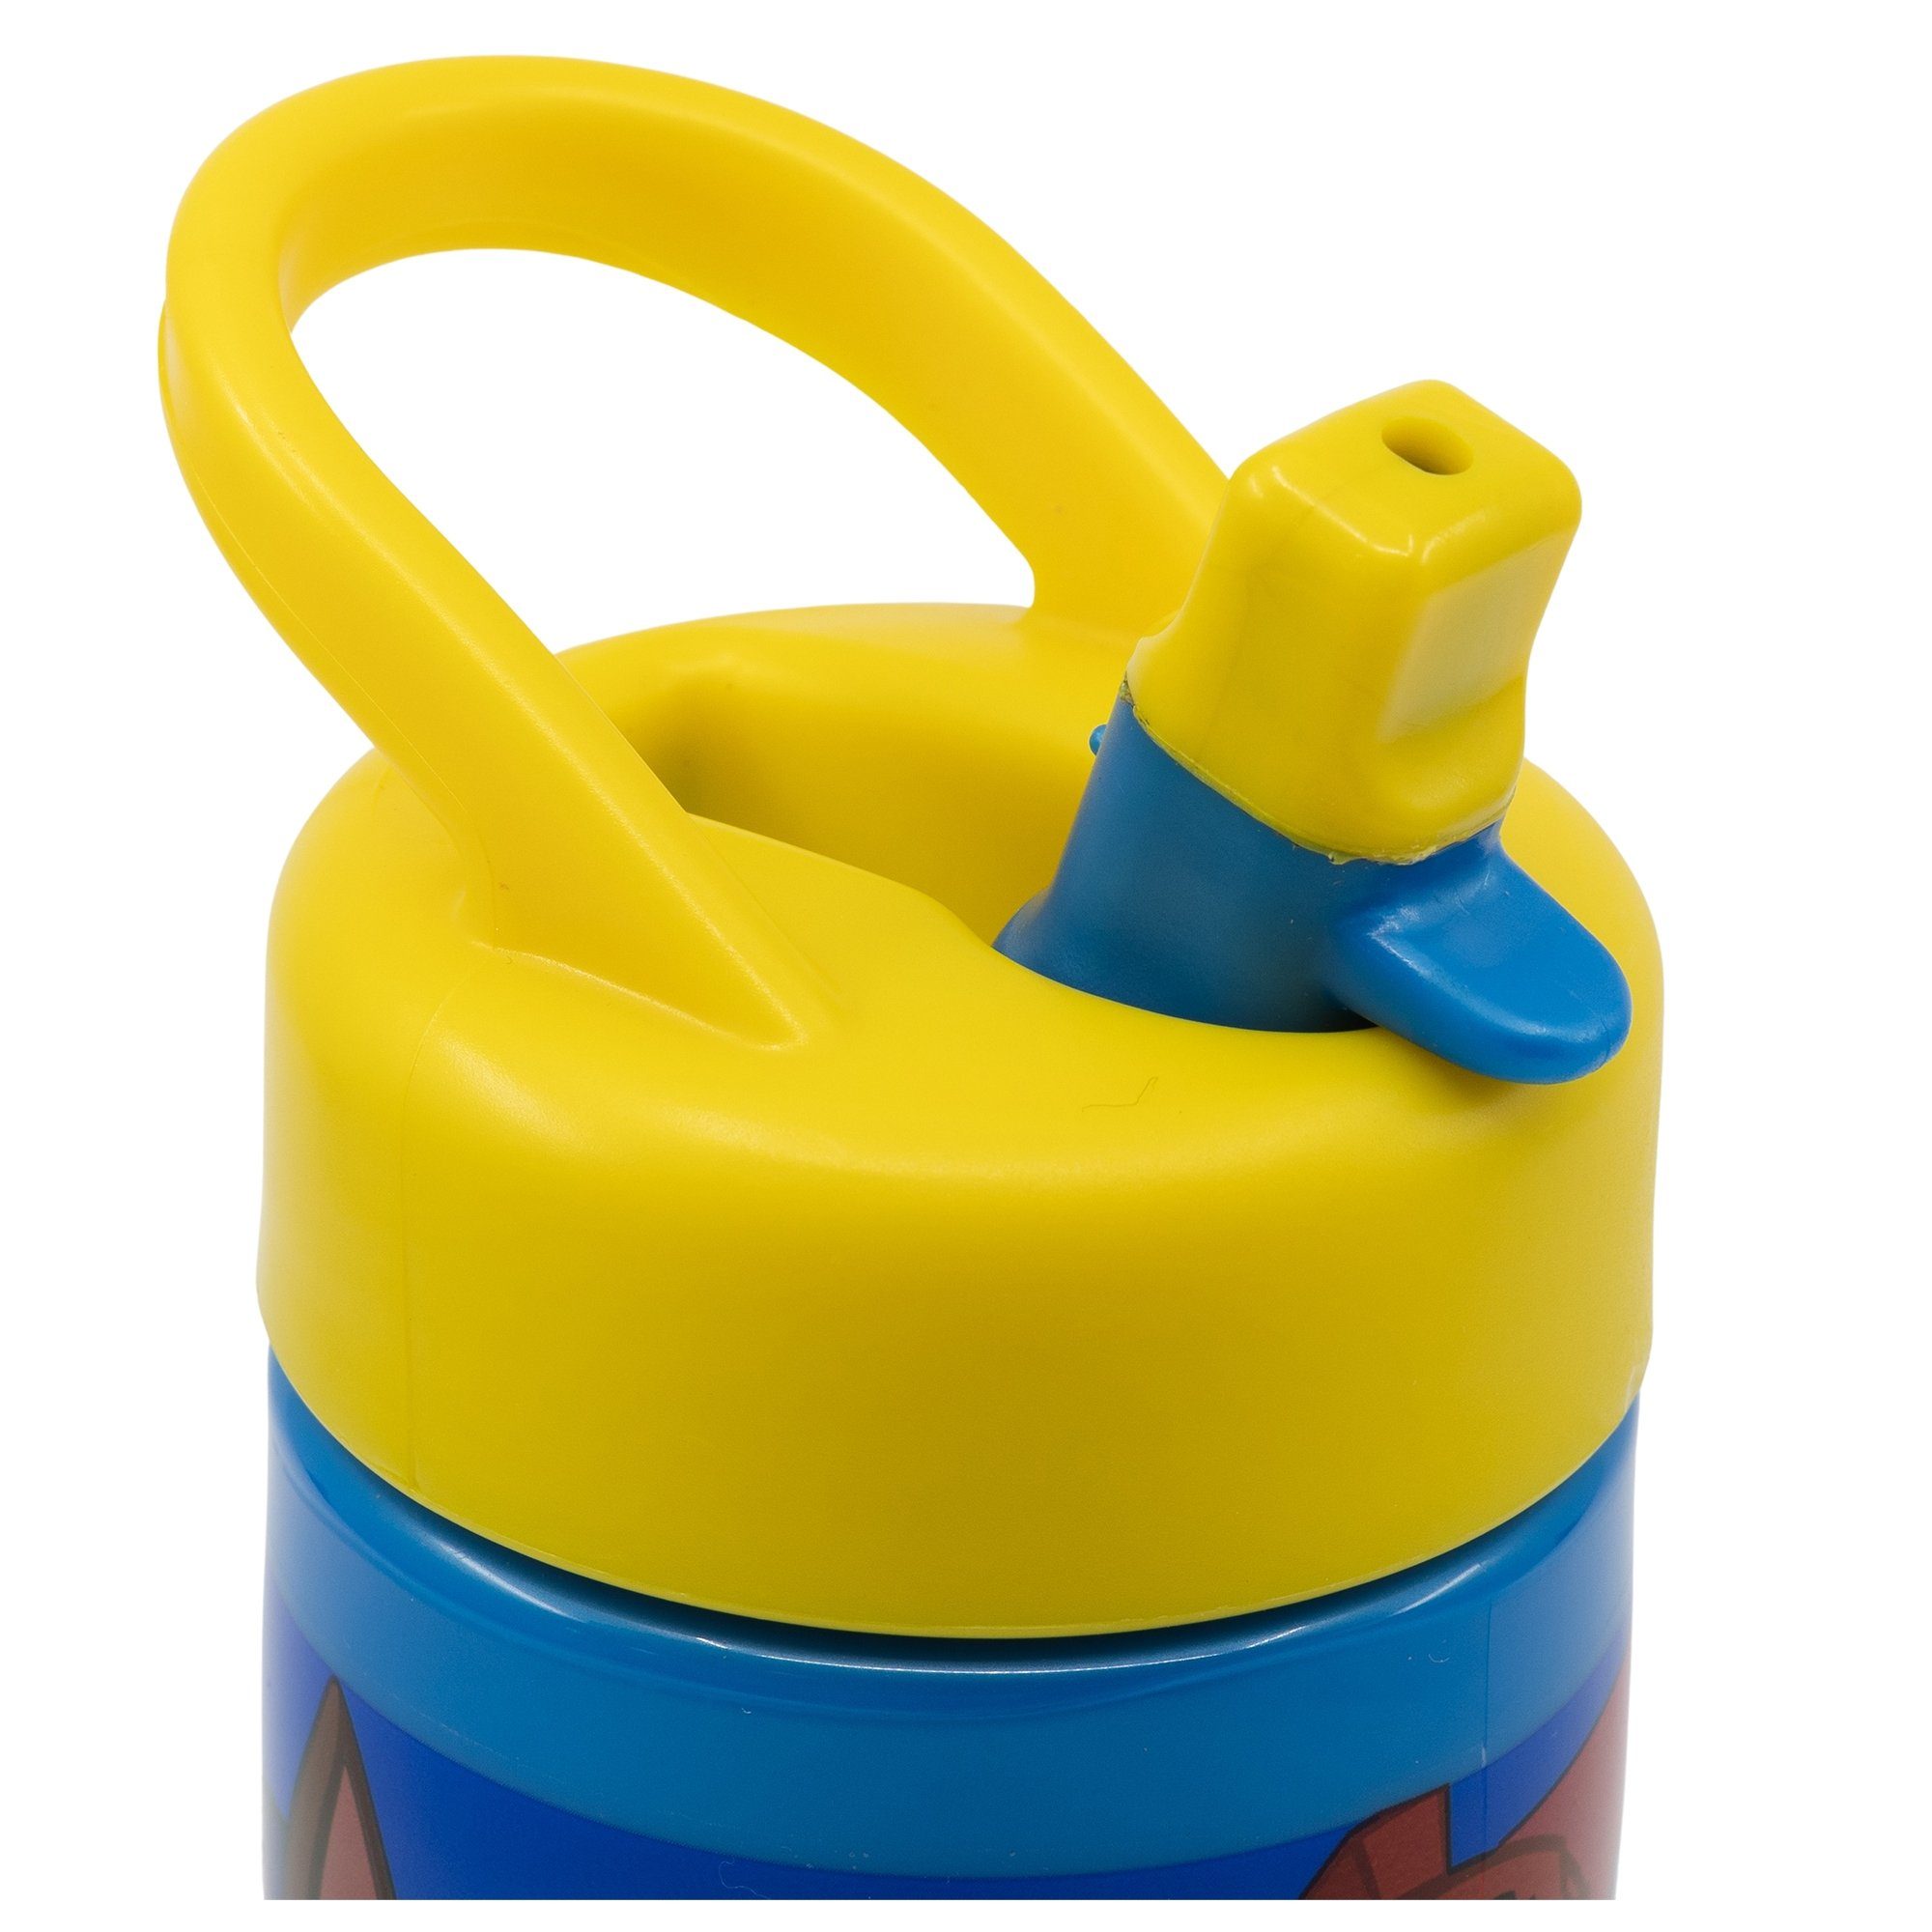 Kinderflasche POWER, mit Trinkkappe PATROL & PAW 410 frei Trinkflasche BPA PUP Griff ml